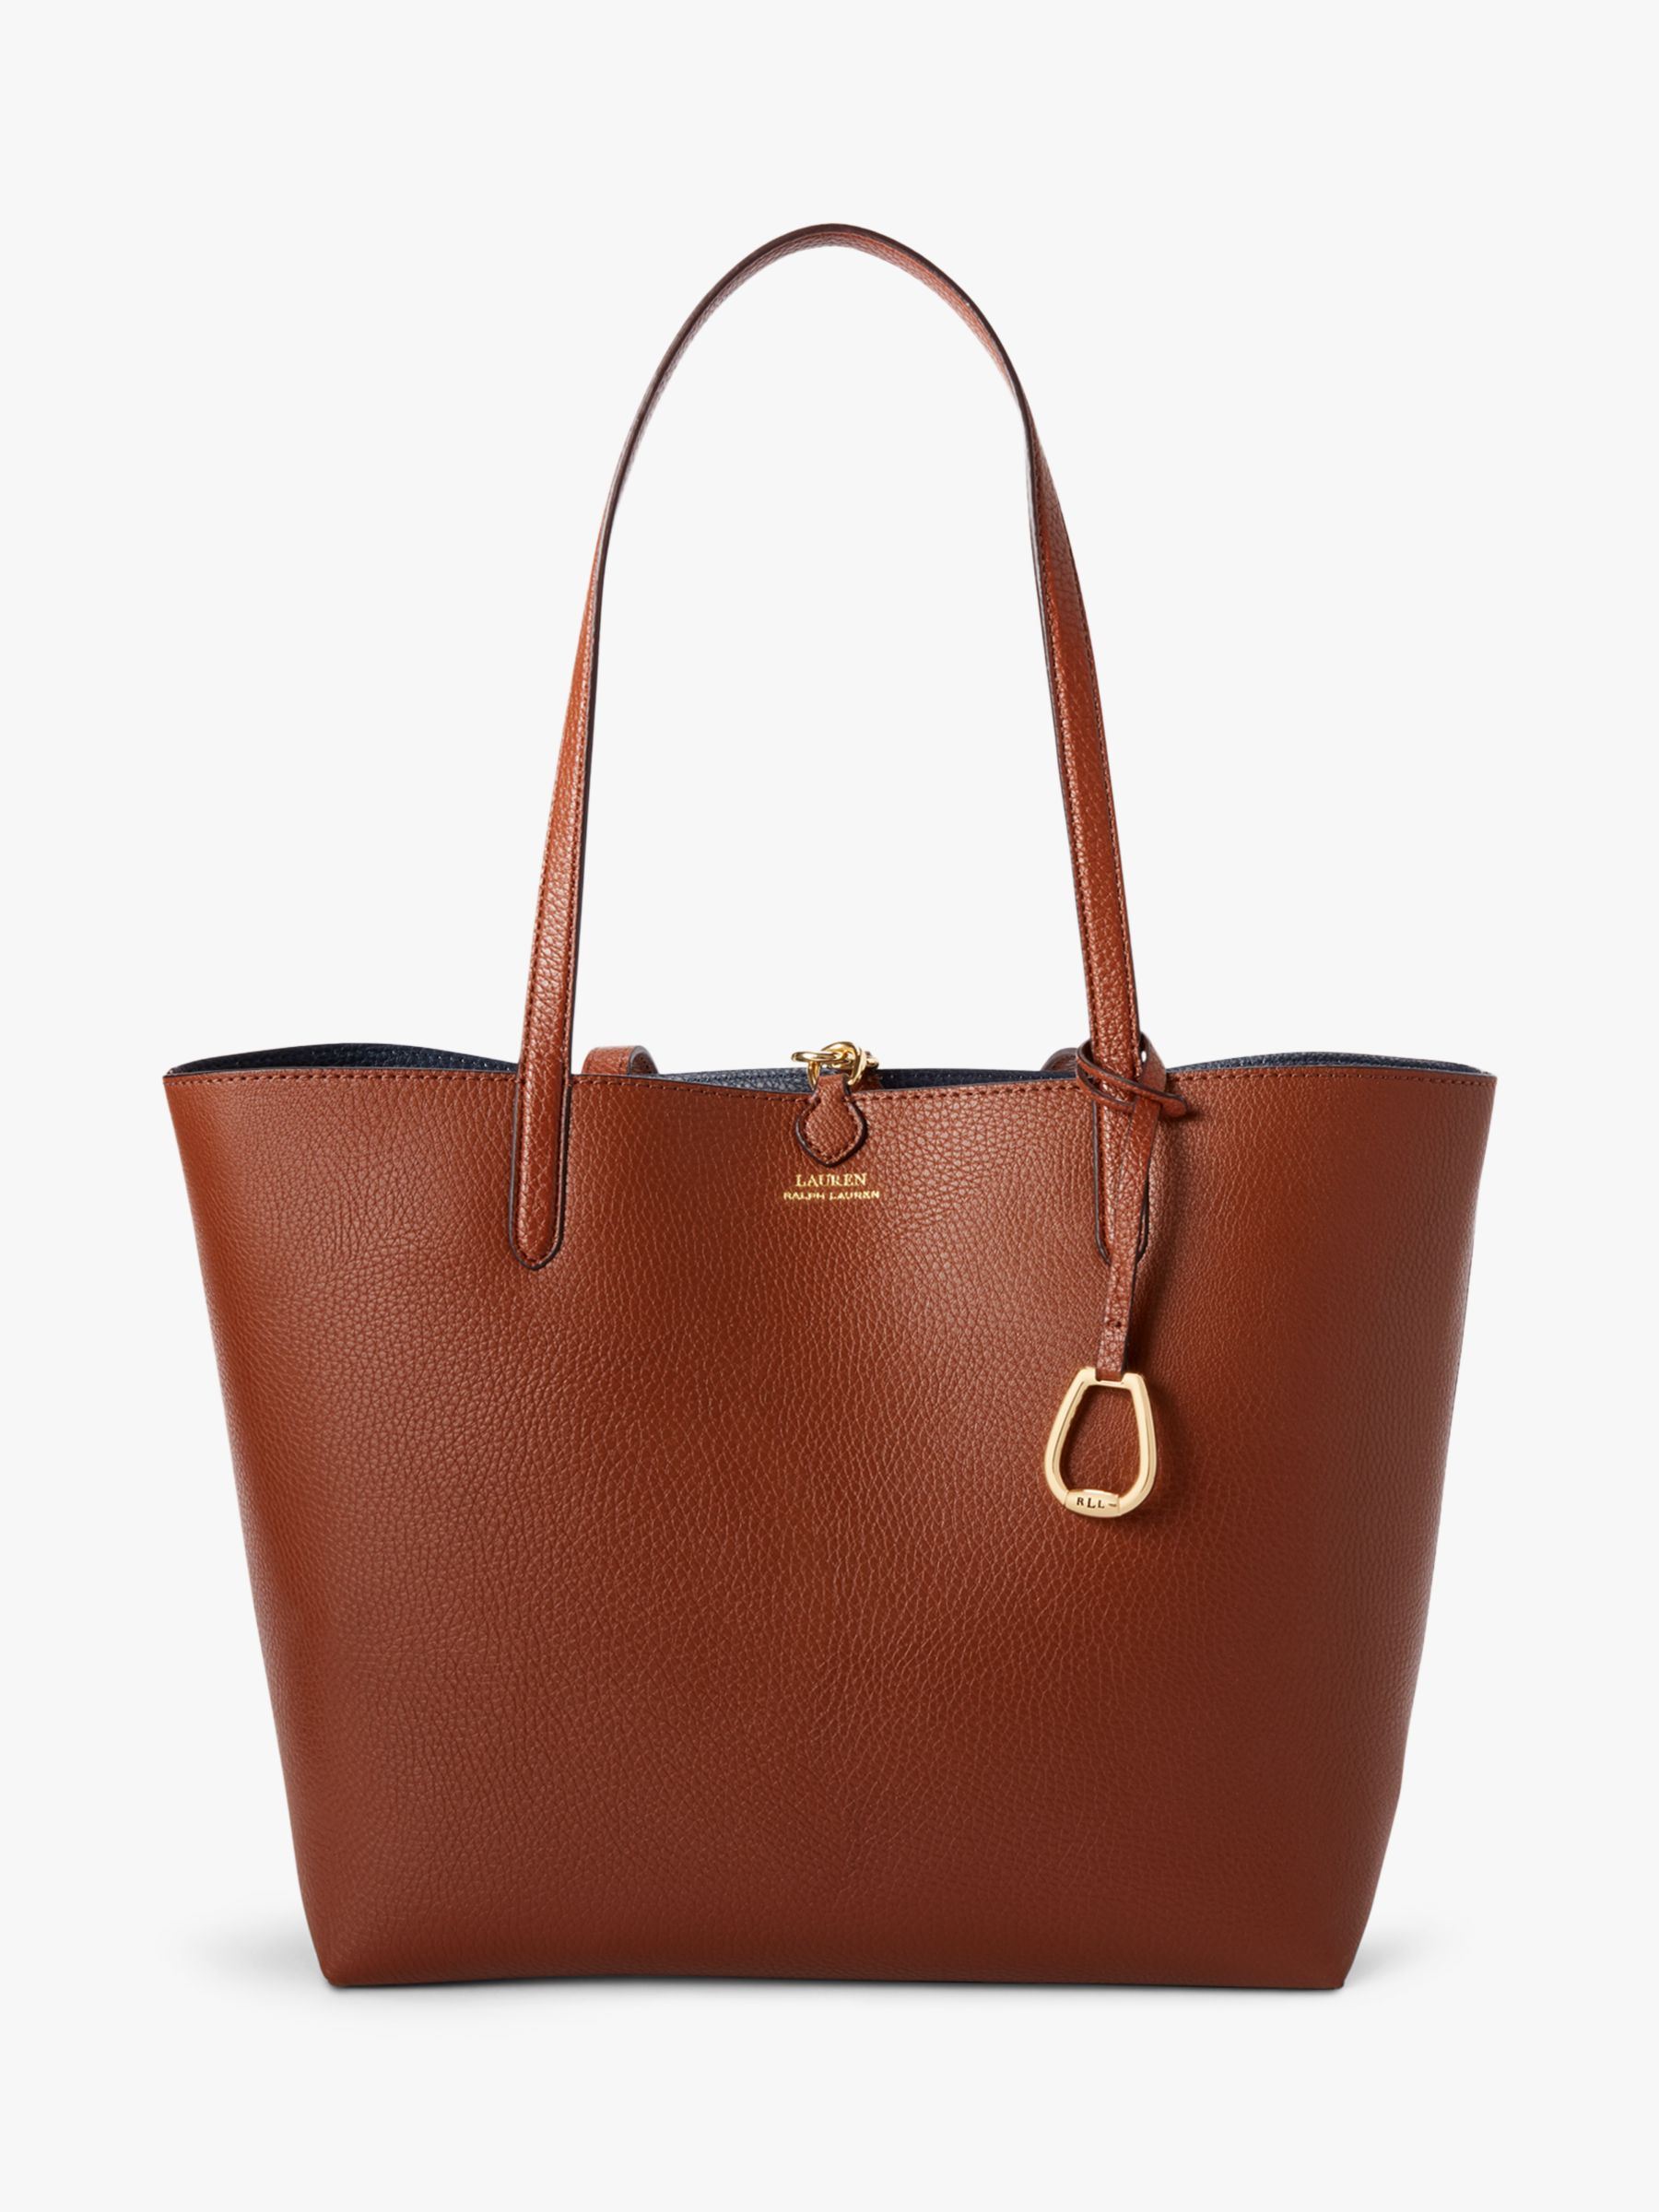 ralph lauren reversible handbag